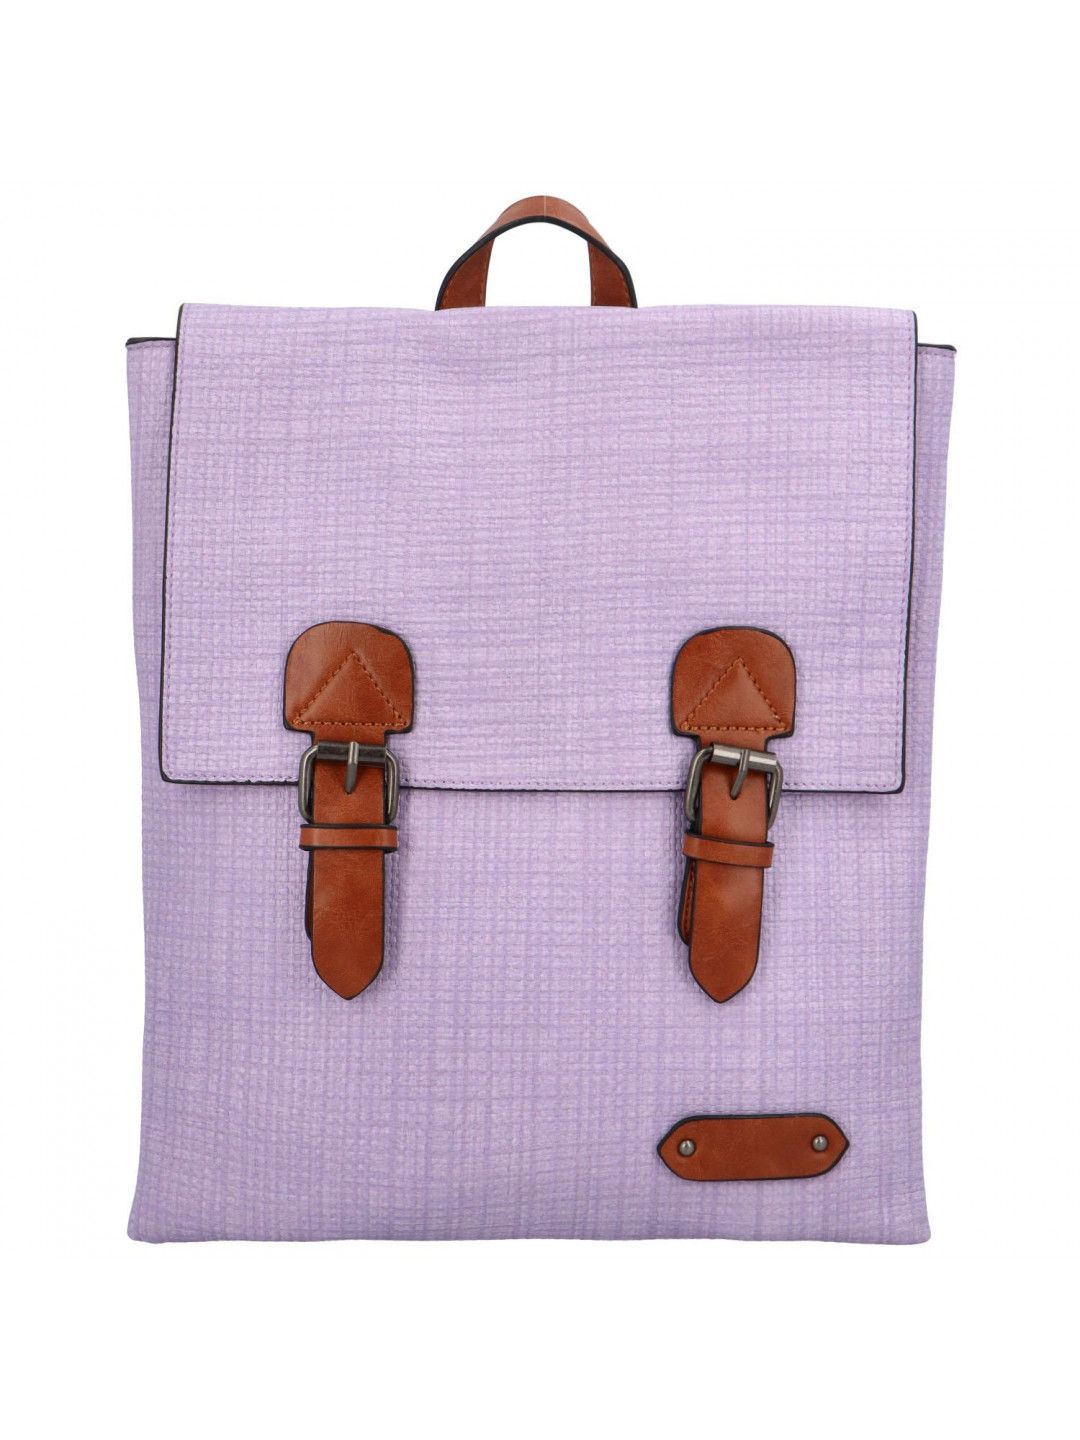 Trendový dámský koženkový batoh Nava světle fialový